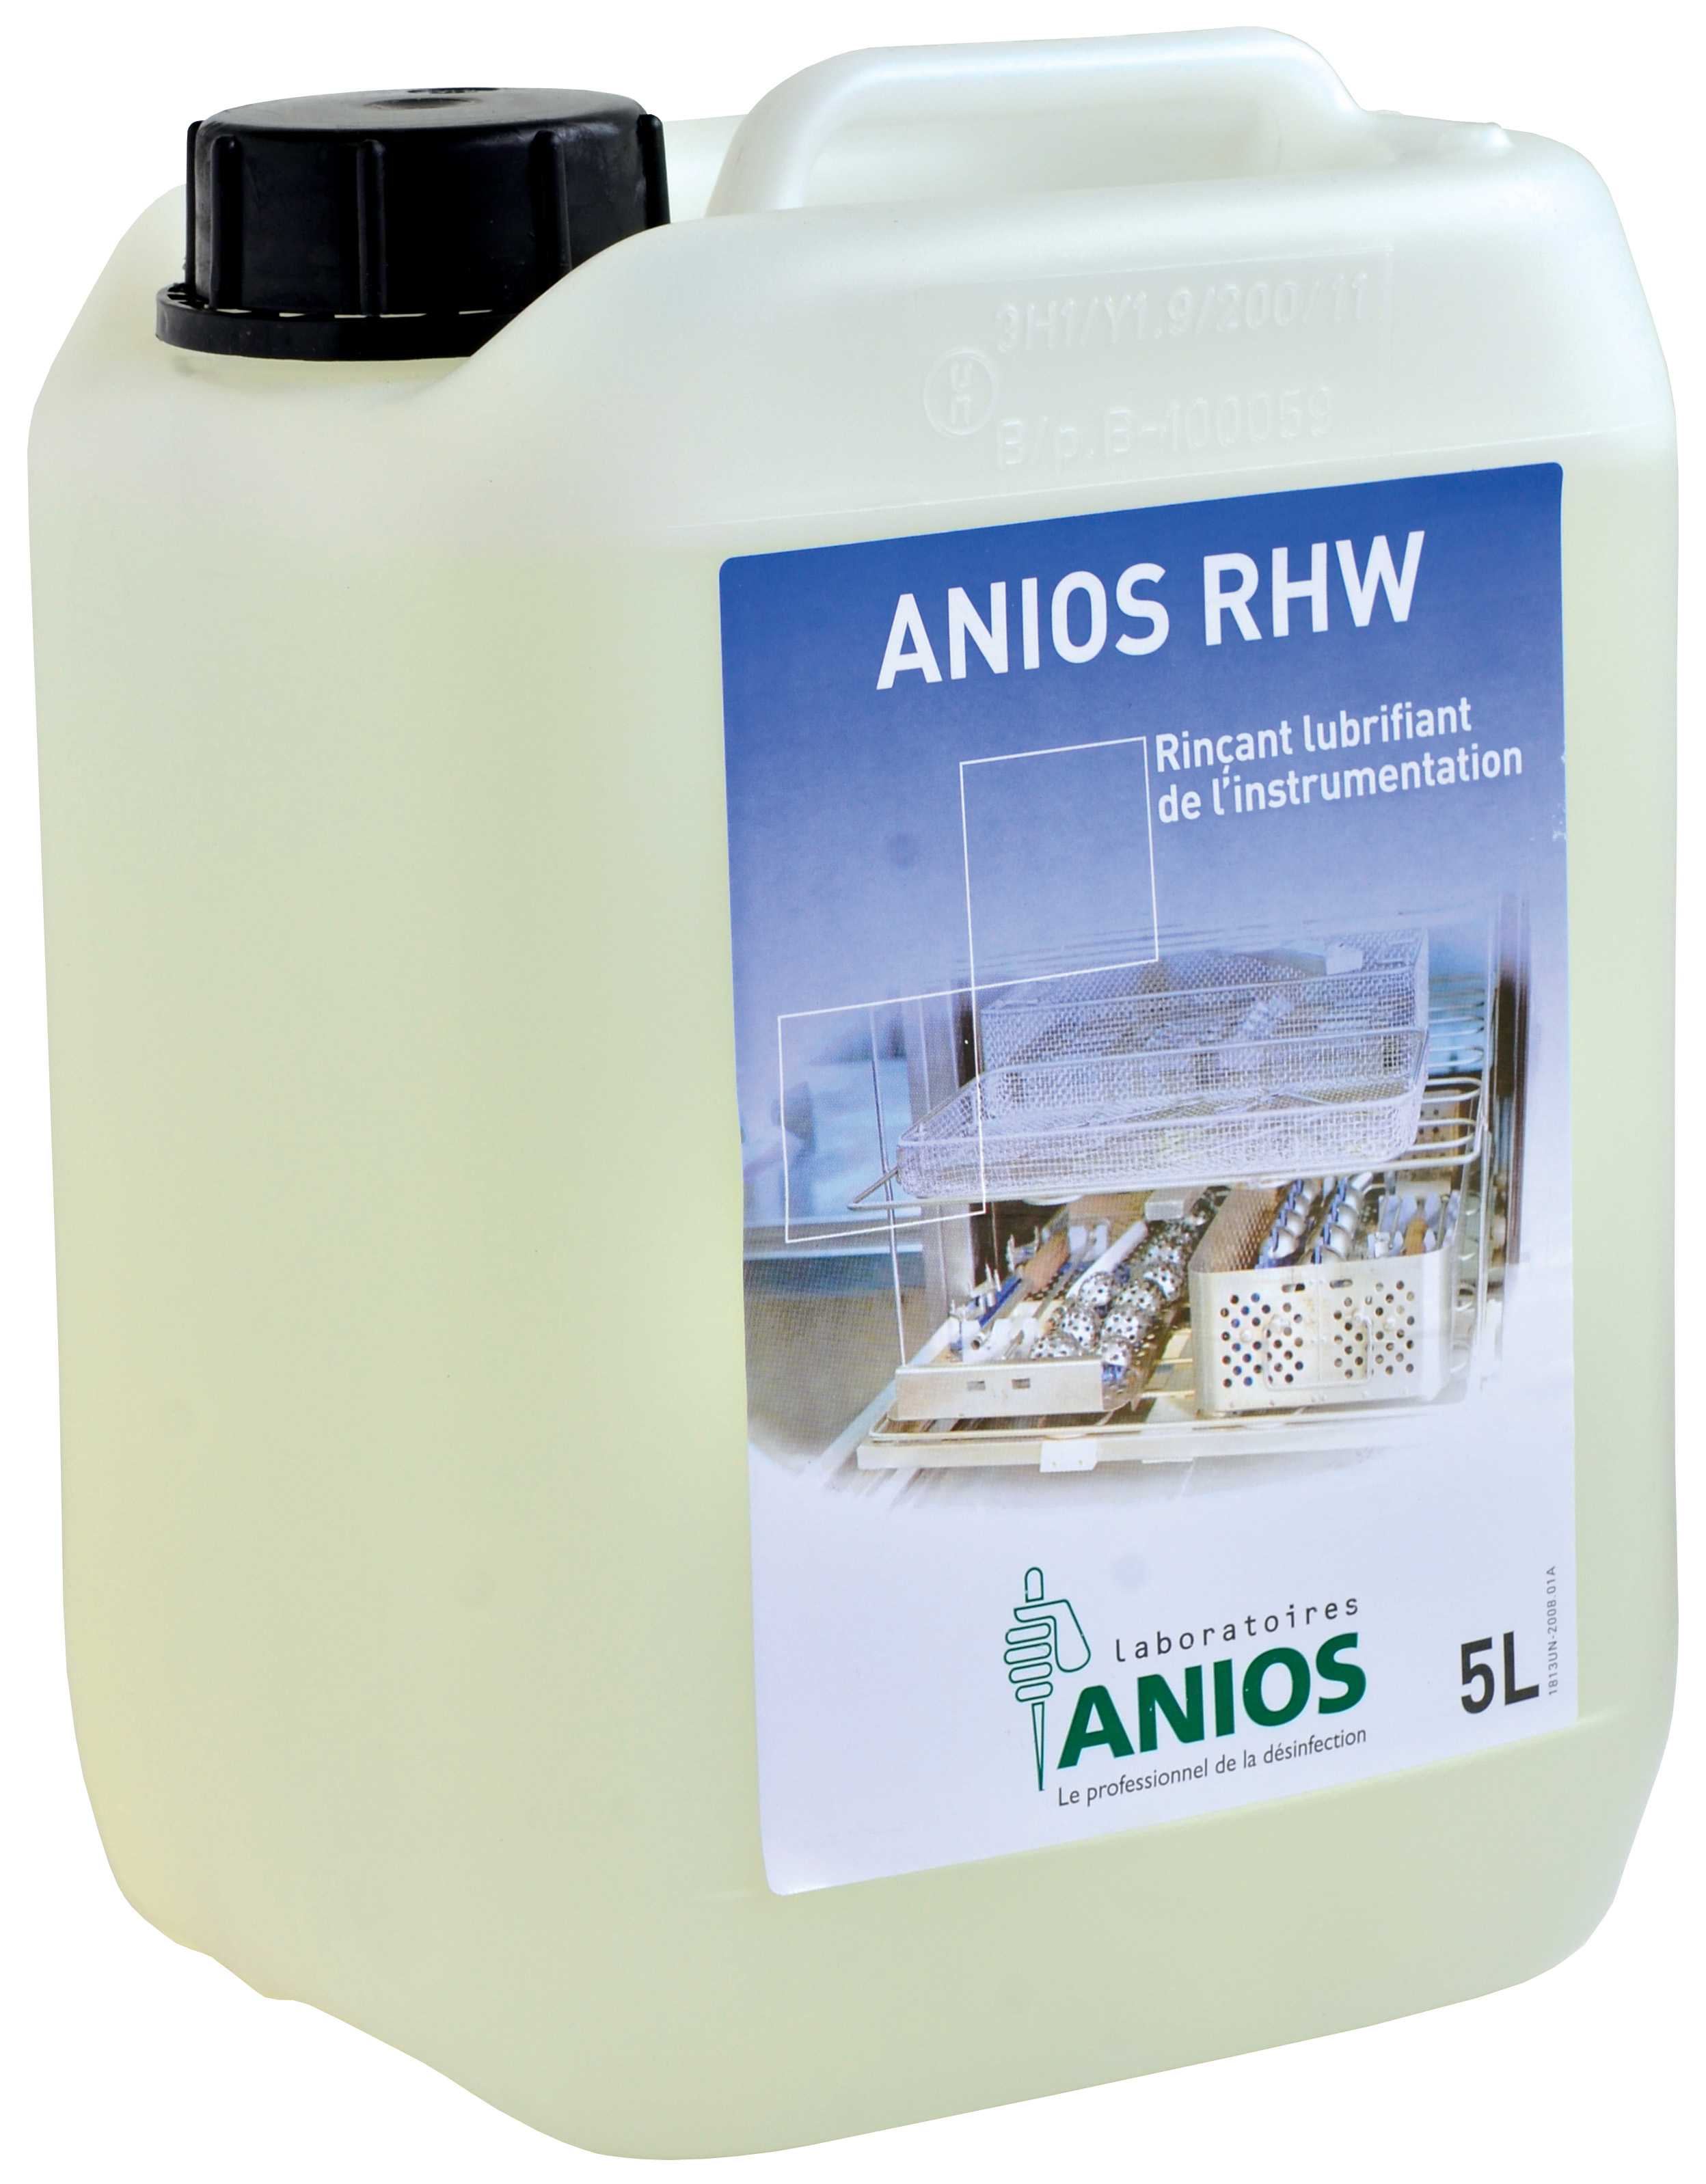 器械润滑快干剂 ANIOS RHW 1813038